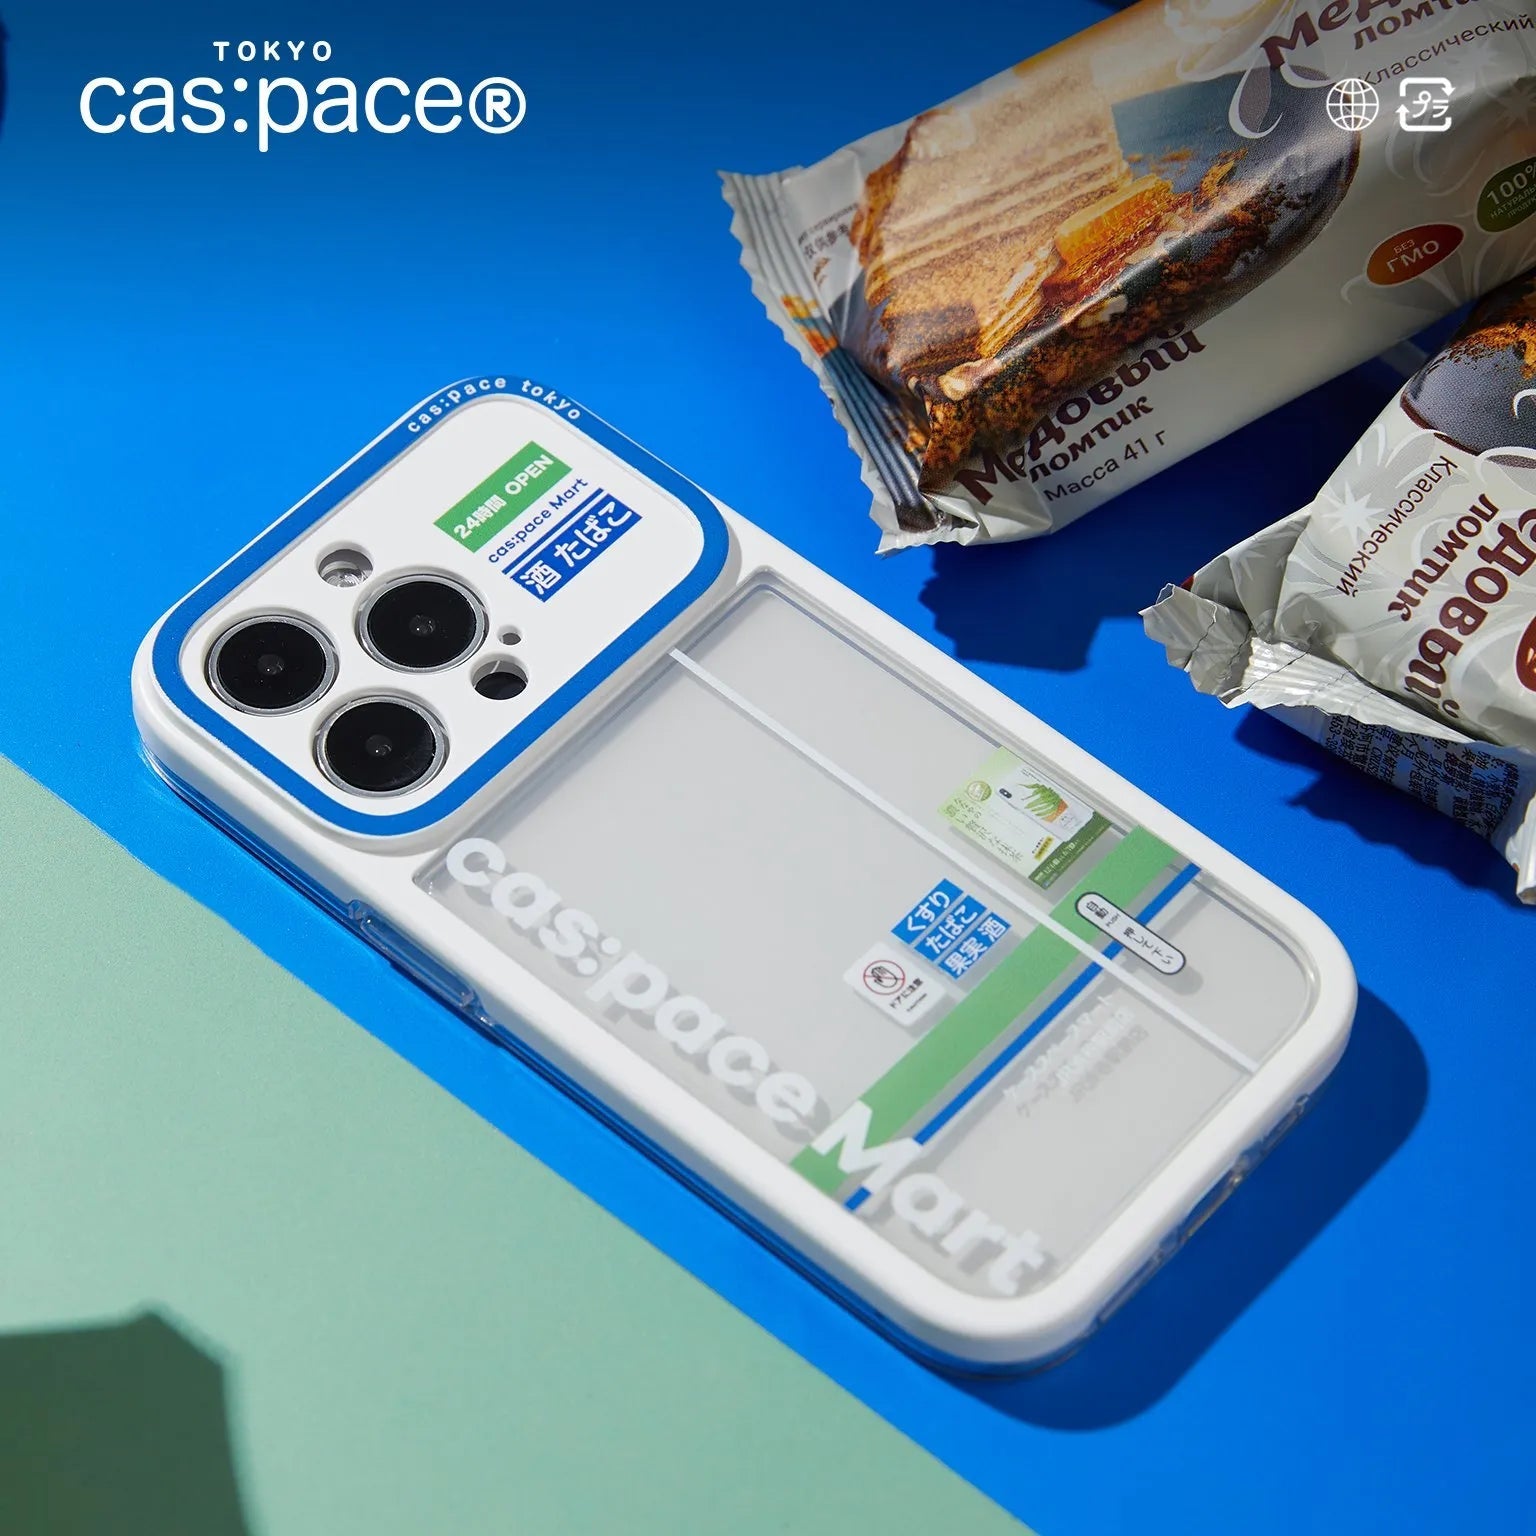 cas:pace 23A/W「コンビニ」携帯ケース - cas:pace 殼空間